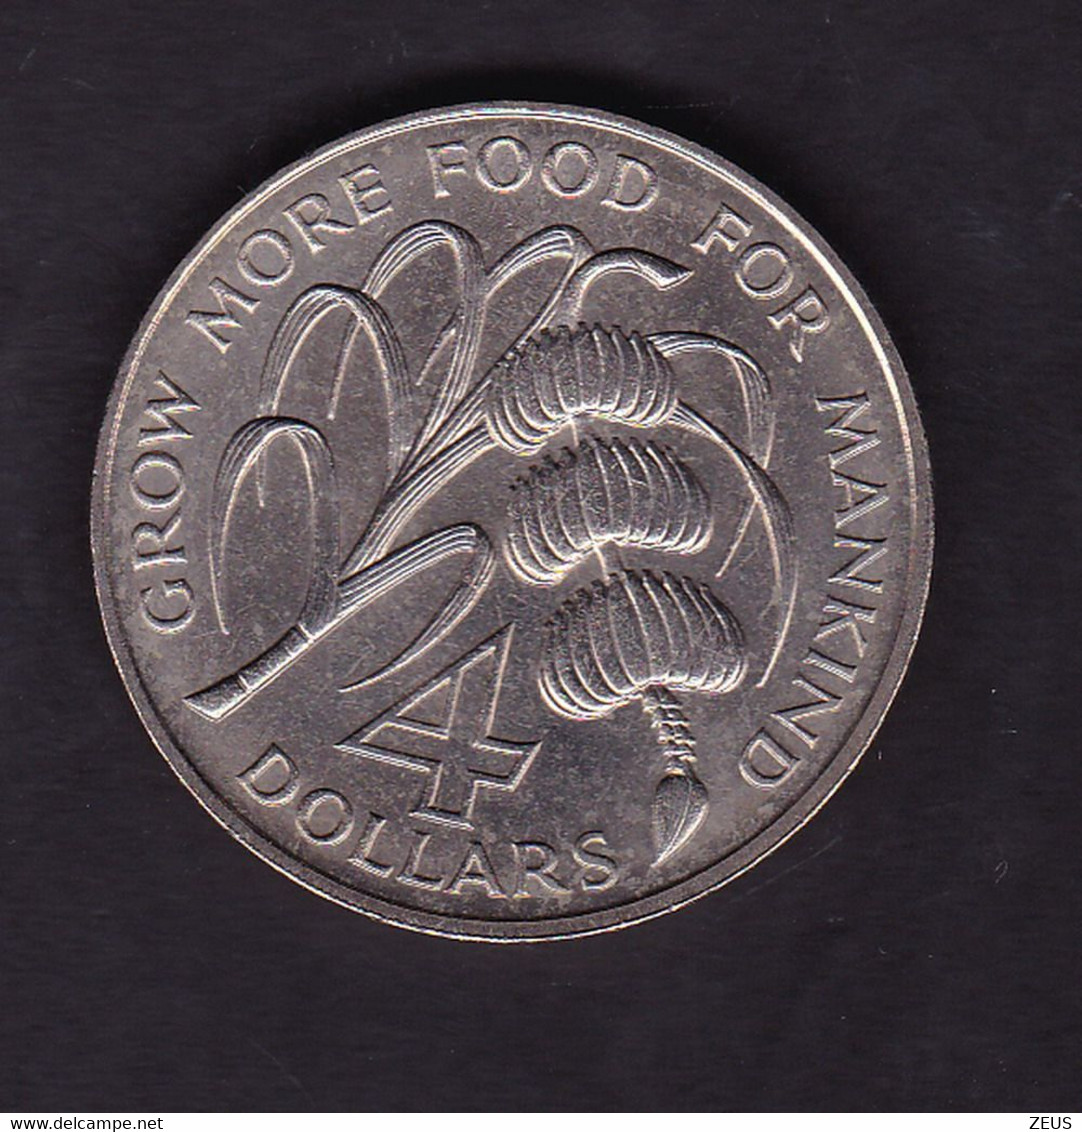 Saint Vincent: 4 DollarS 1970 " KM 13 F. A. O. " - Caraibi Britannici (Territori)